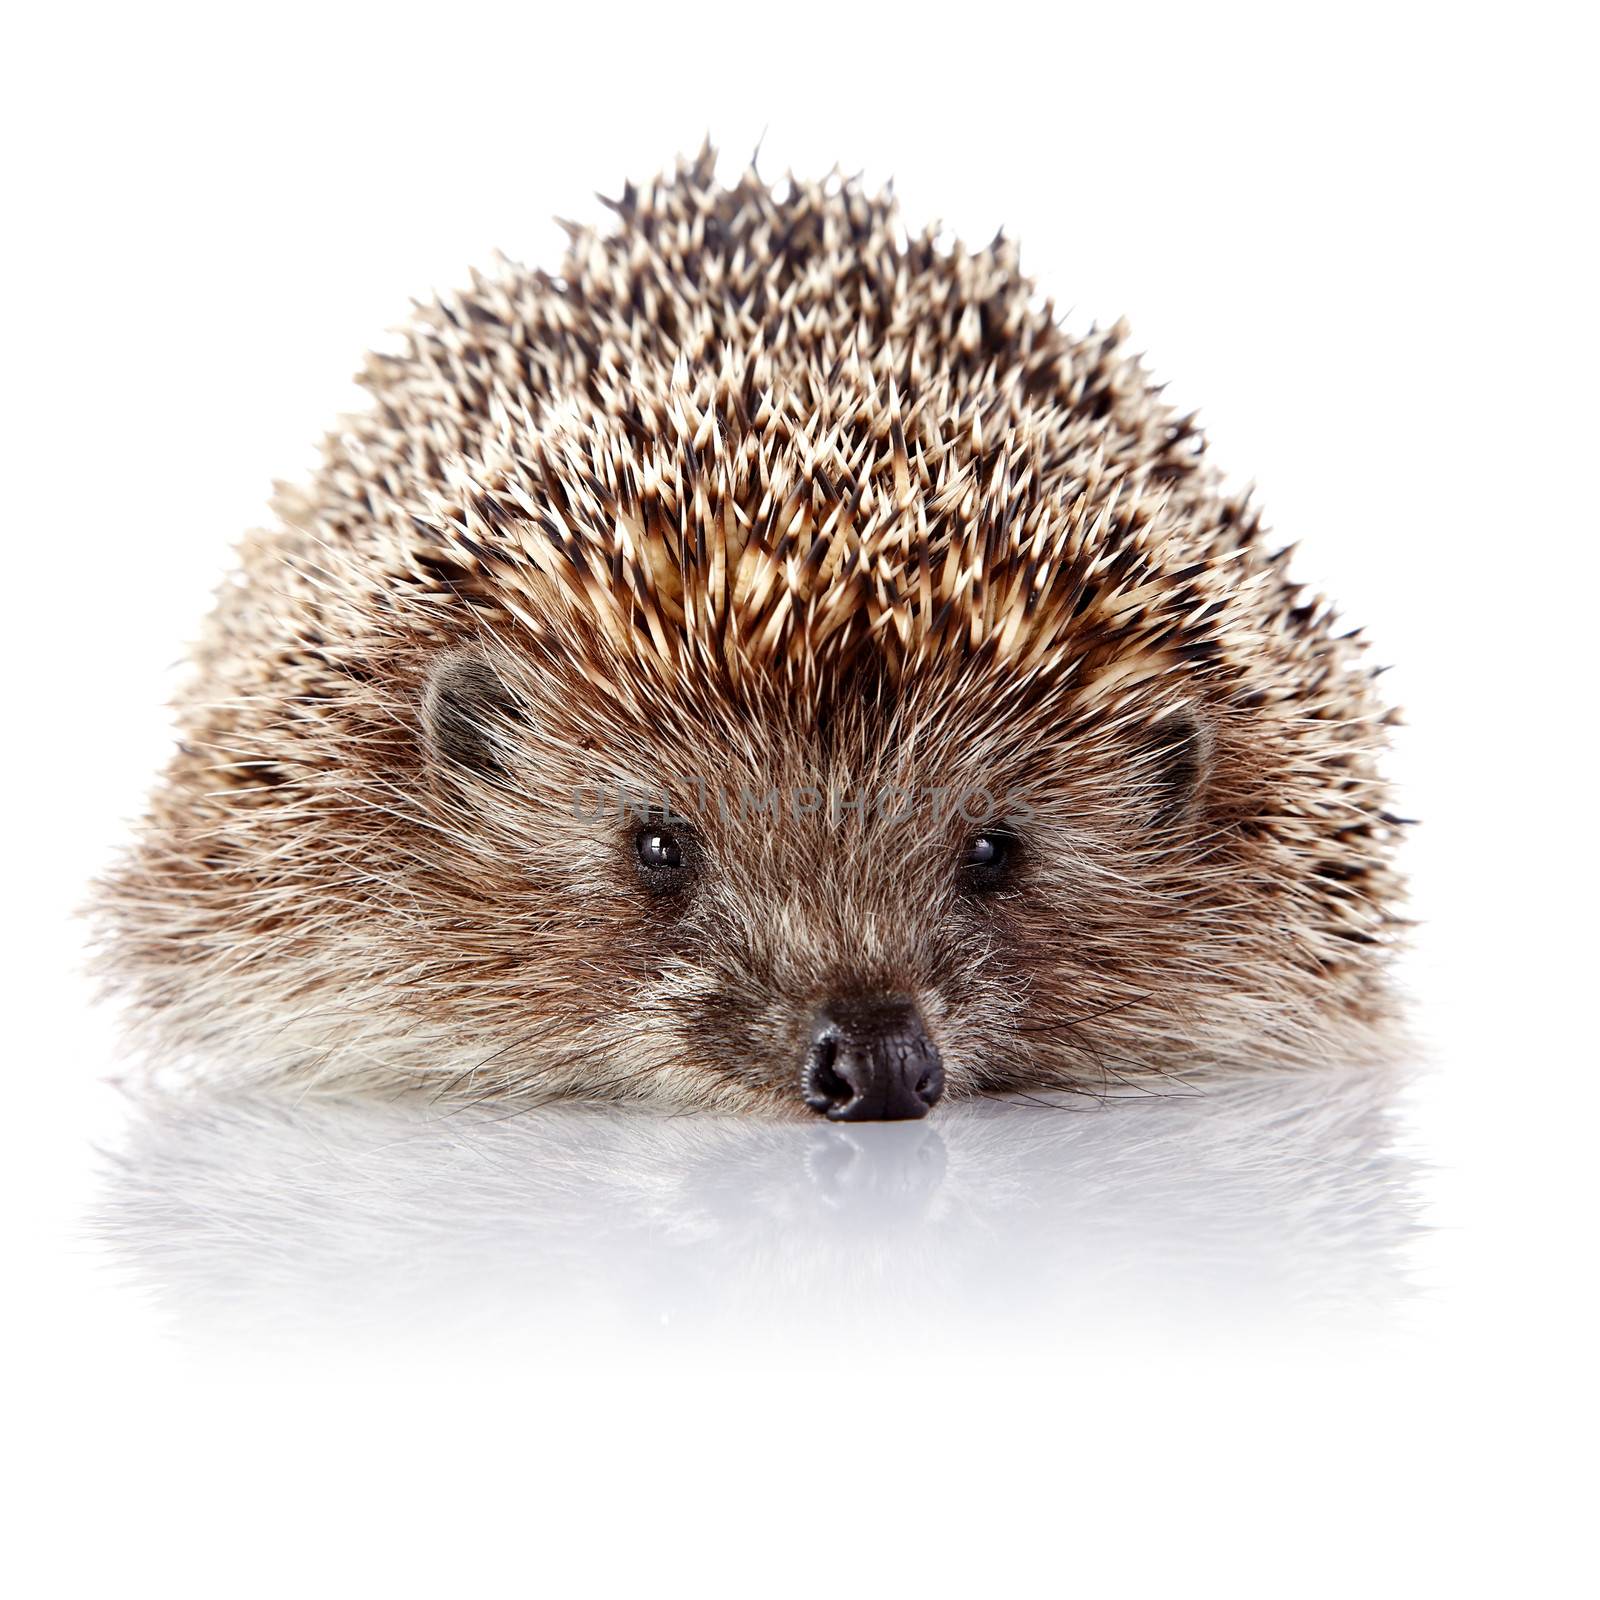 Prickly hedgehog on a white background by Azaliya